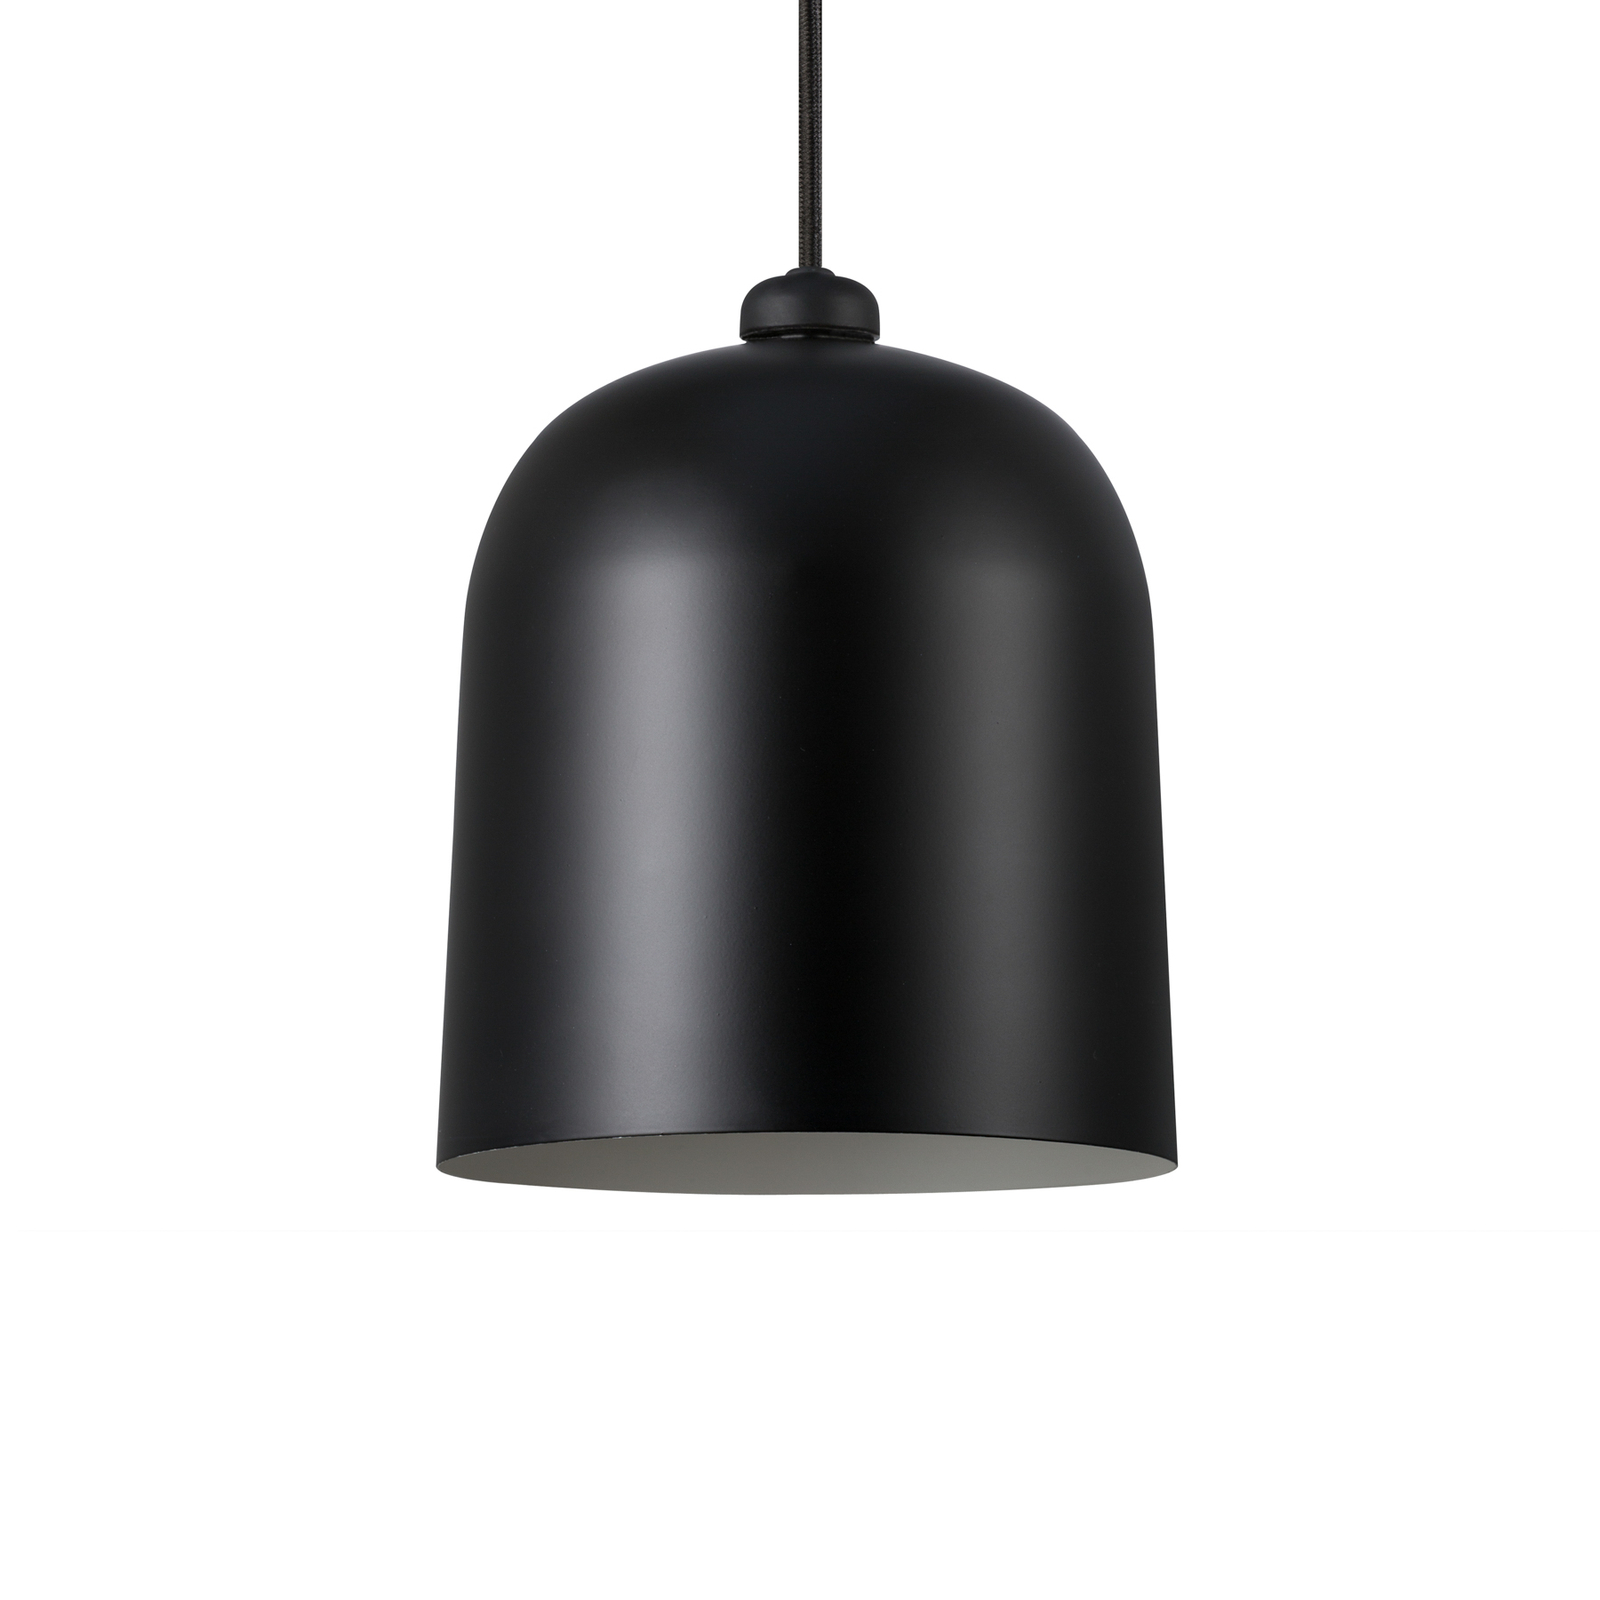 Hanglamp Angle E27, zwart